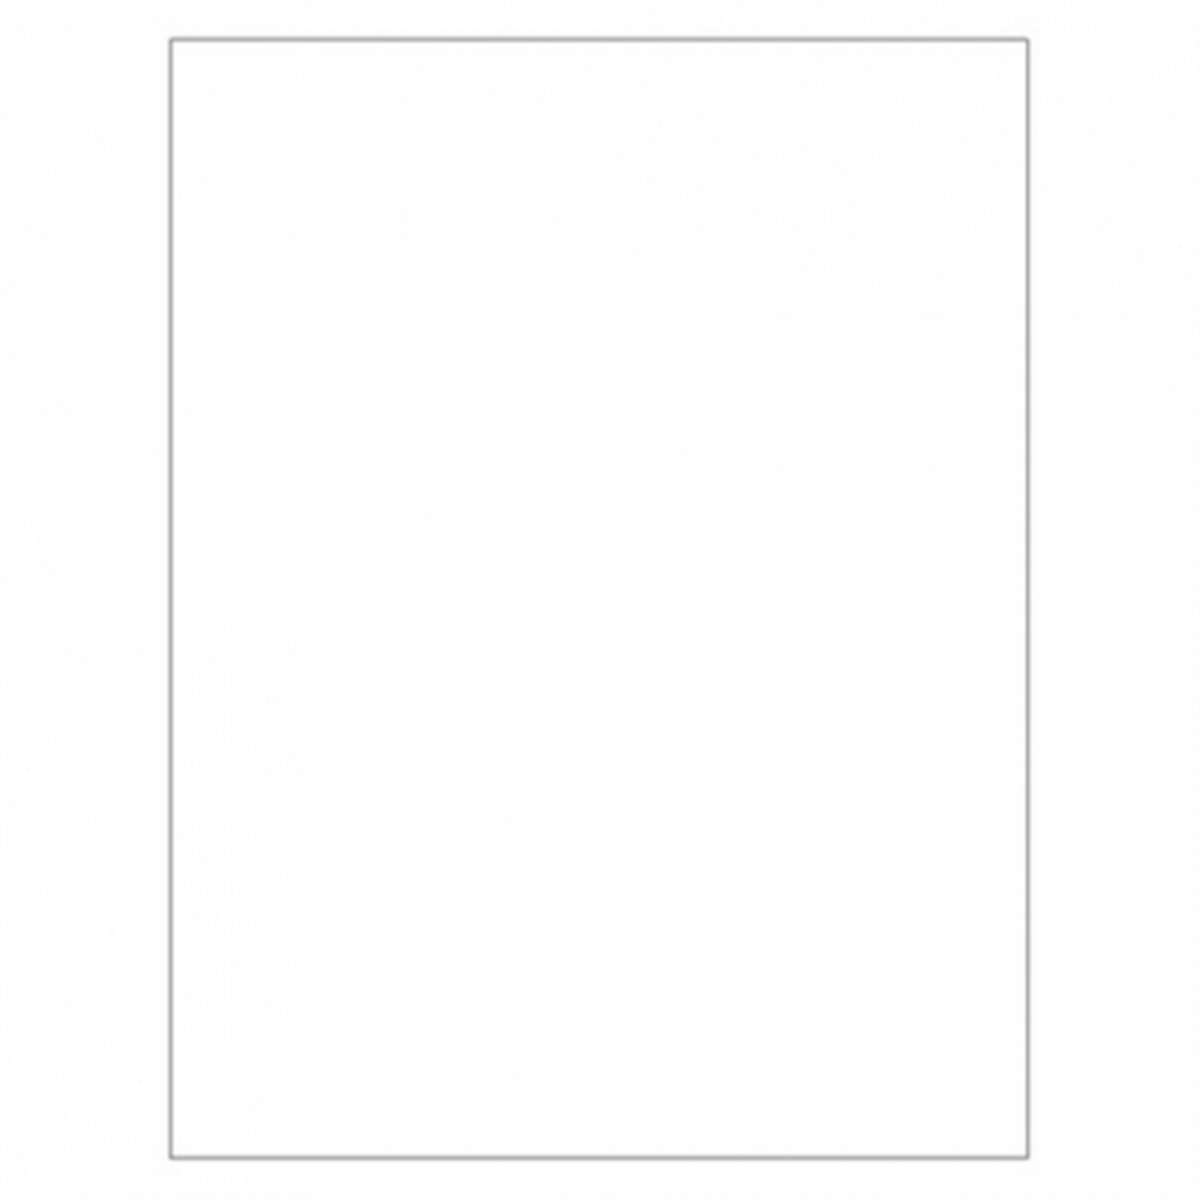 Vetvrij wikkelpapier of hamburgervellen wit 31x38 cm | Inhoud: 1000 stuks